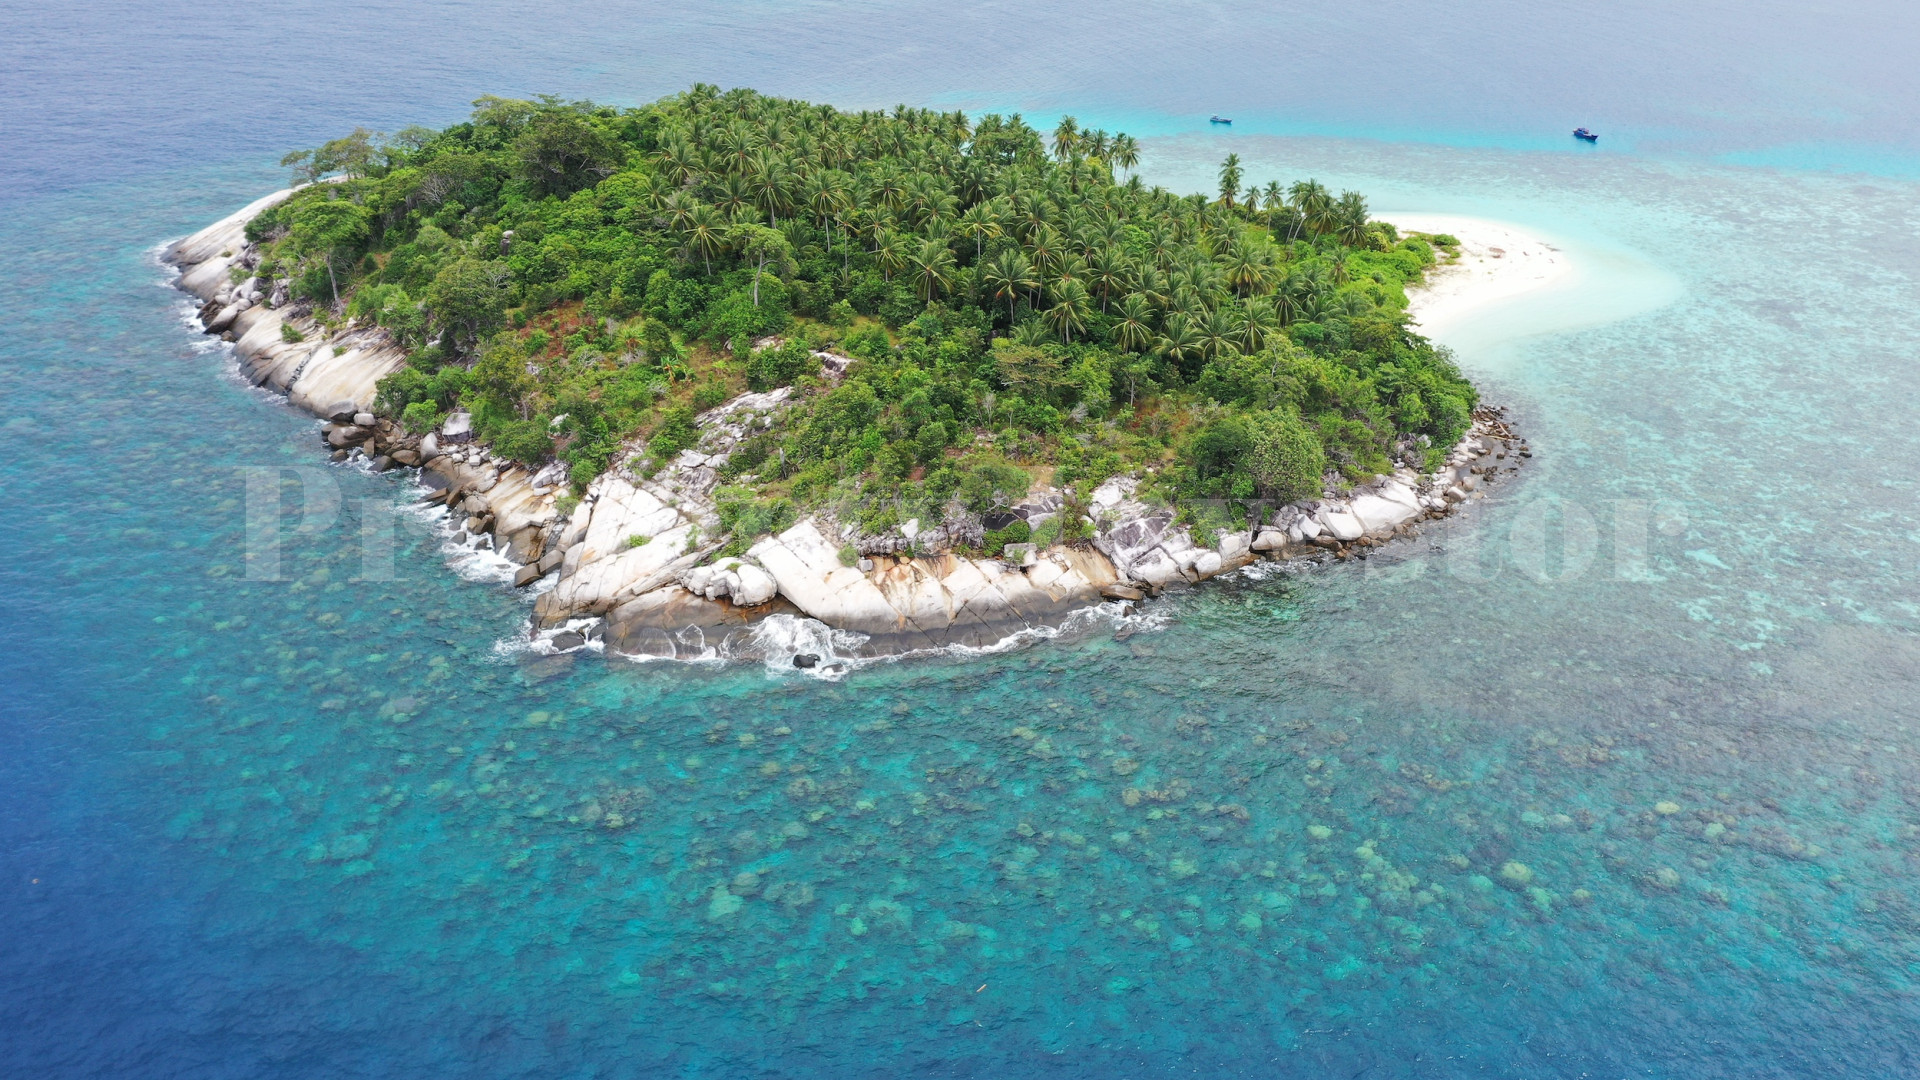 Потрясающий частный дикий тропический остров 5 гектар под коммерческое развитие или строительство индивидуального дома на островах Риау, Индонезия